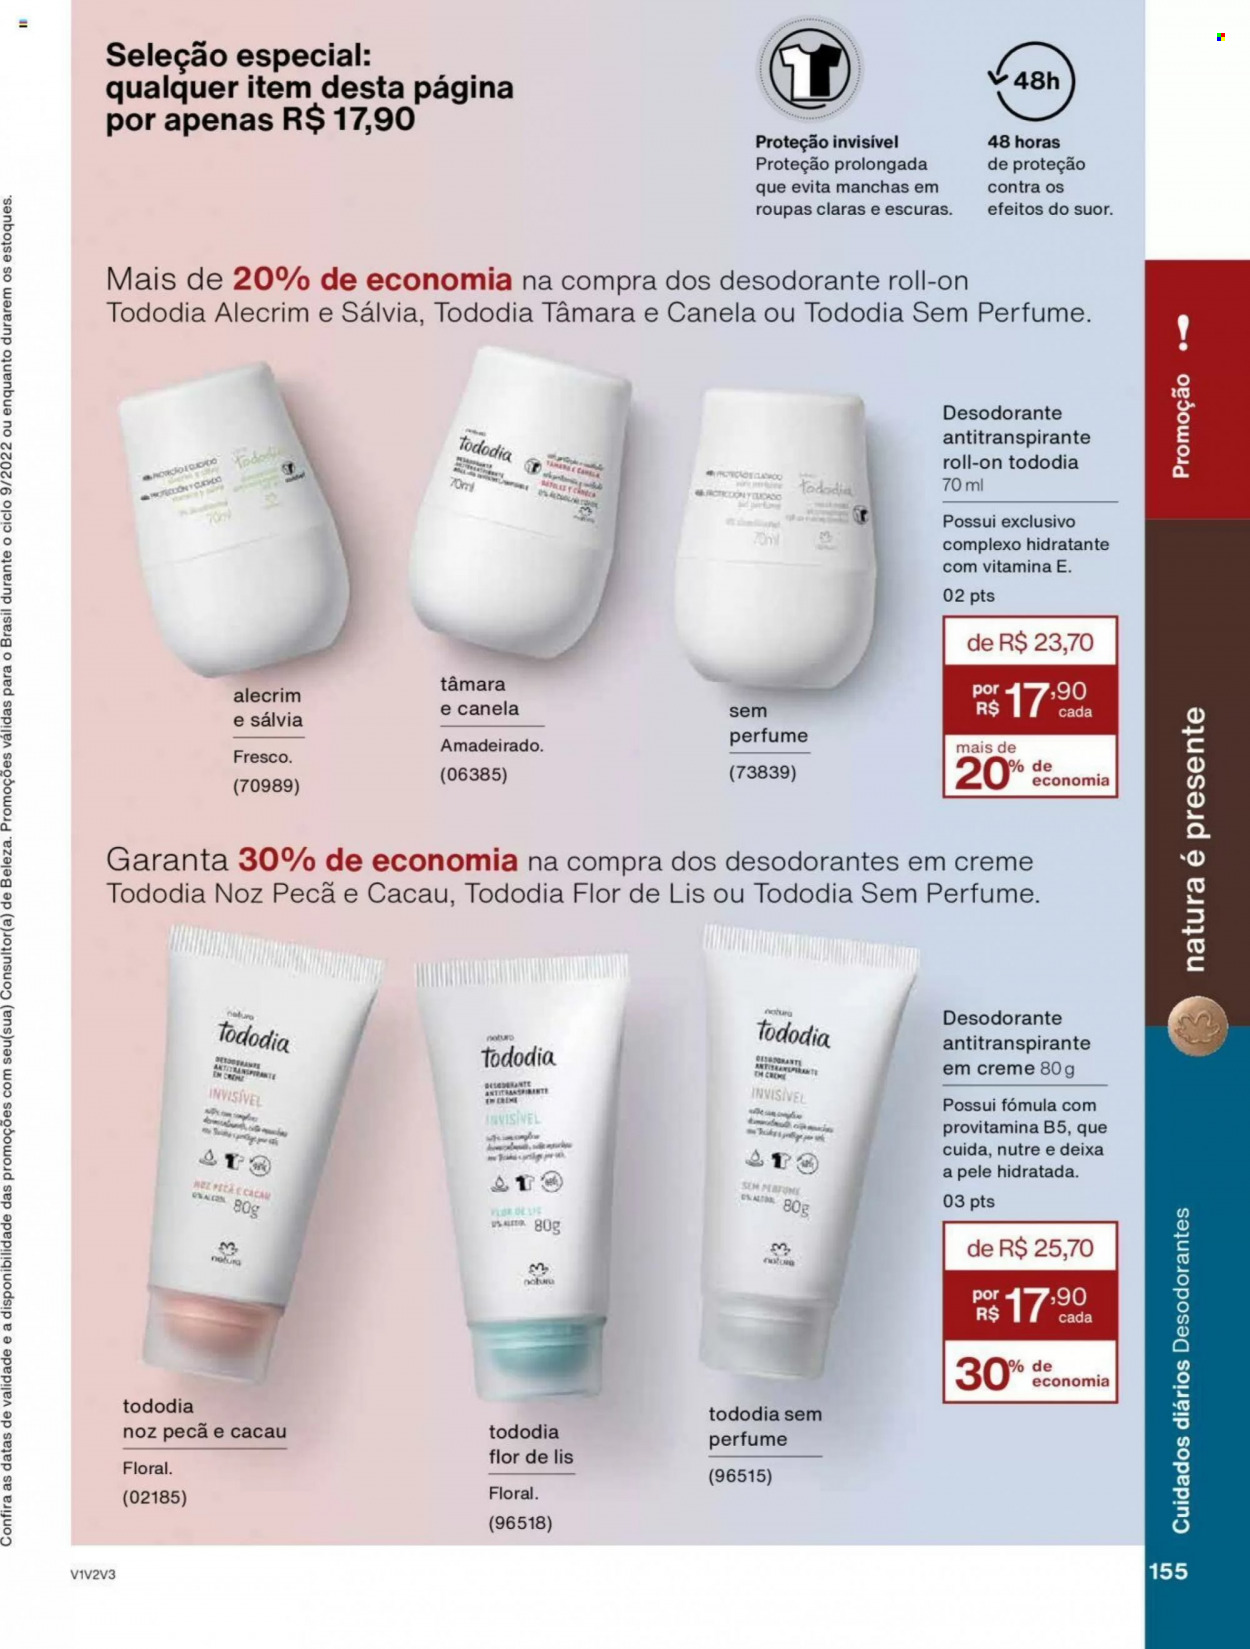 thumbnail - Folheto Natura - Produtos em promoção - desodorante, antitranspirante, perfume. Página 155.